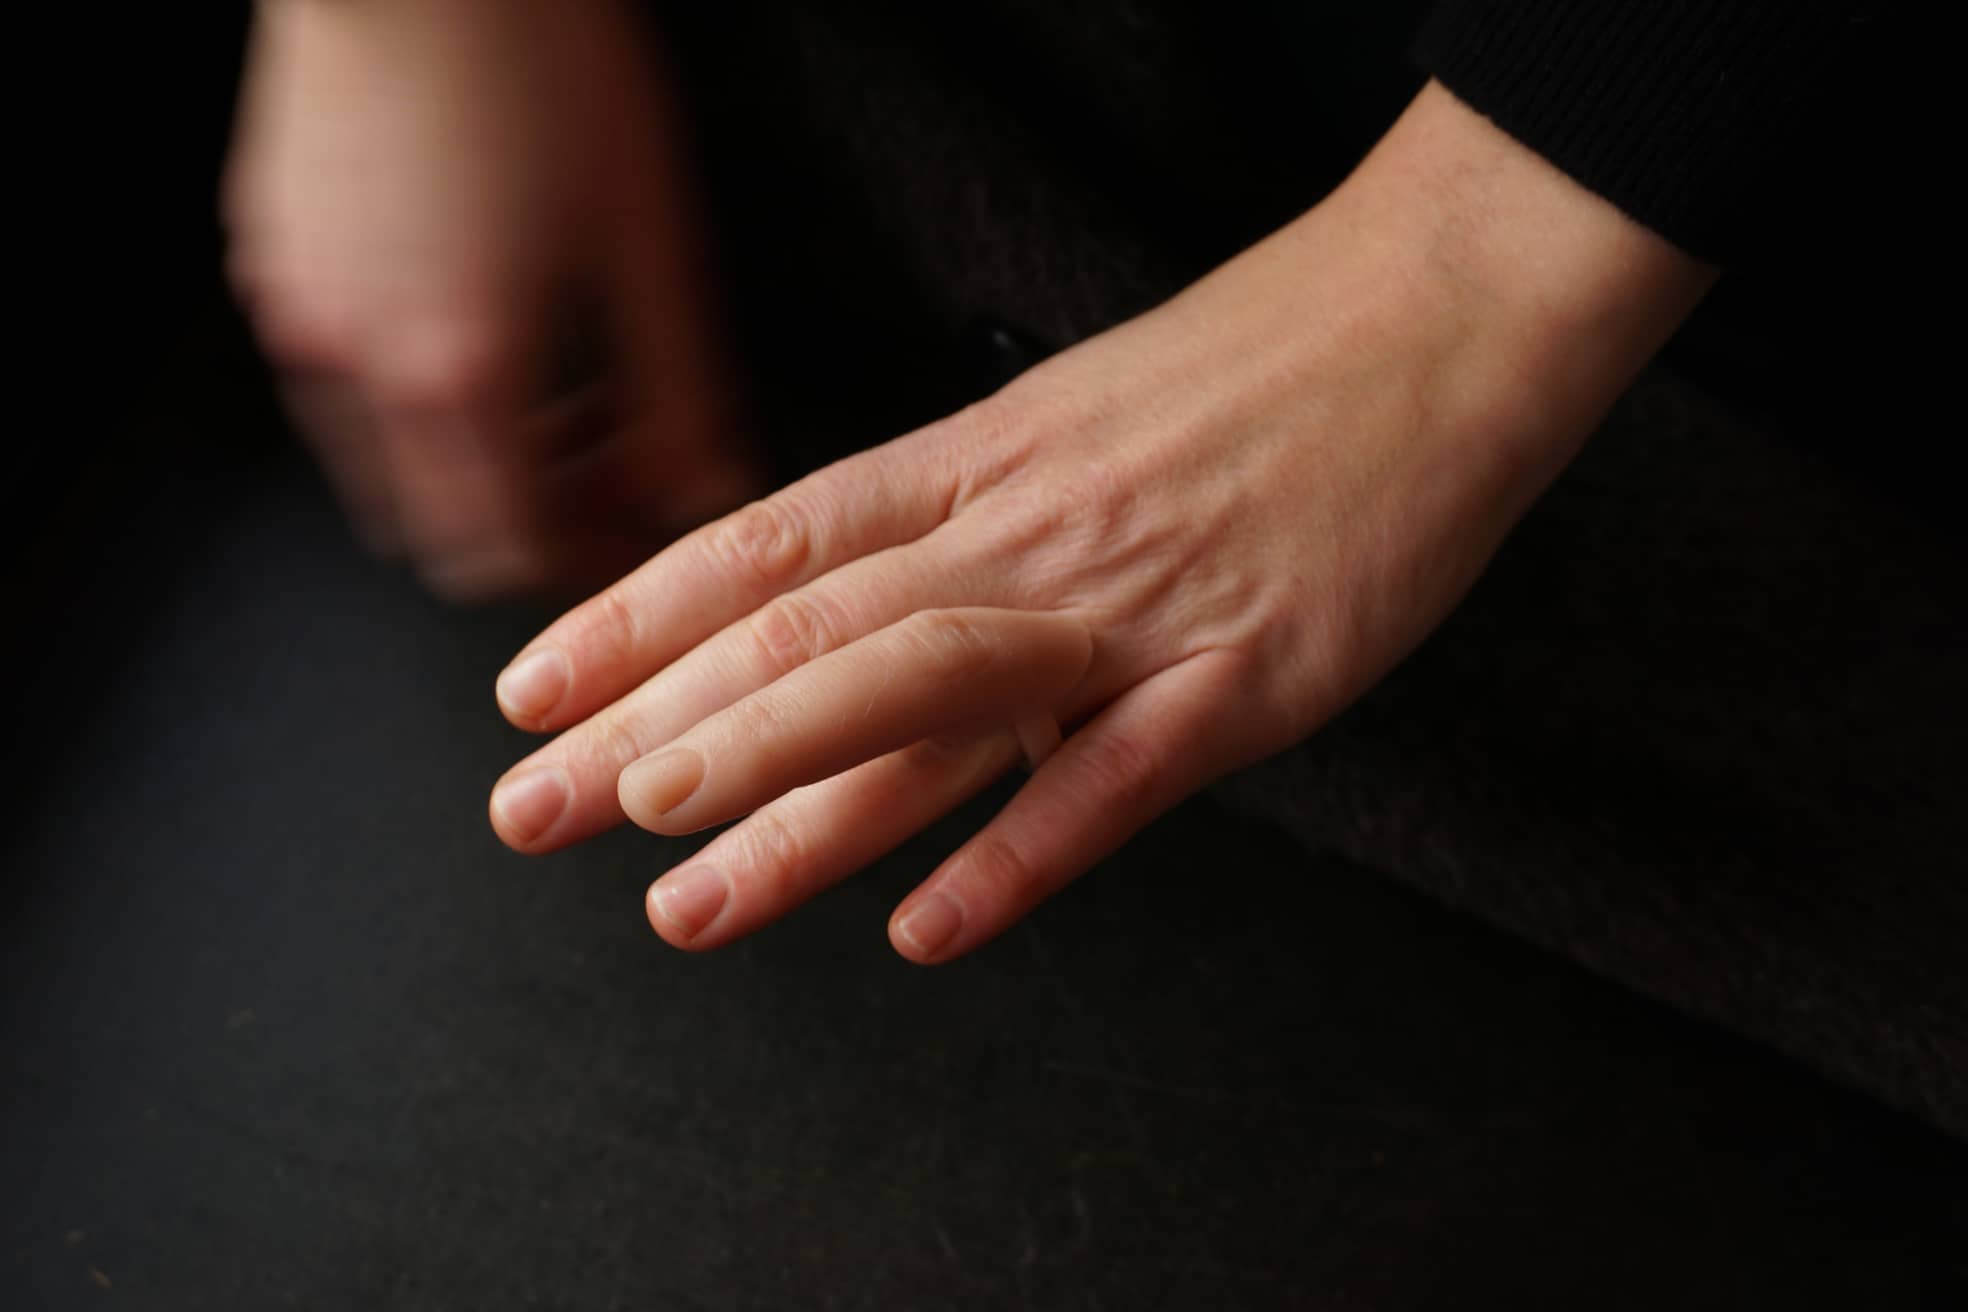 Mit dem "Fingerring" der Berliner Künstlerin Nadja Buttendorf sehen auch echte Hände aus wie von einer KI geschaffen. Denn die scheitert meist, Hände mit fünf Fingern zu generieren.